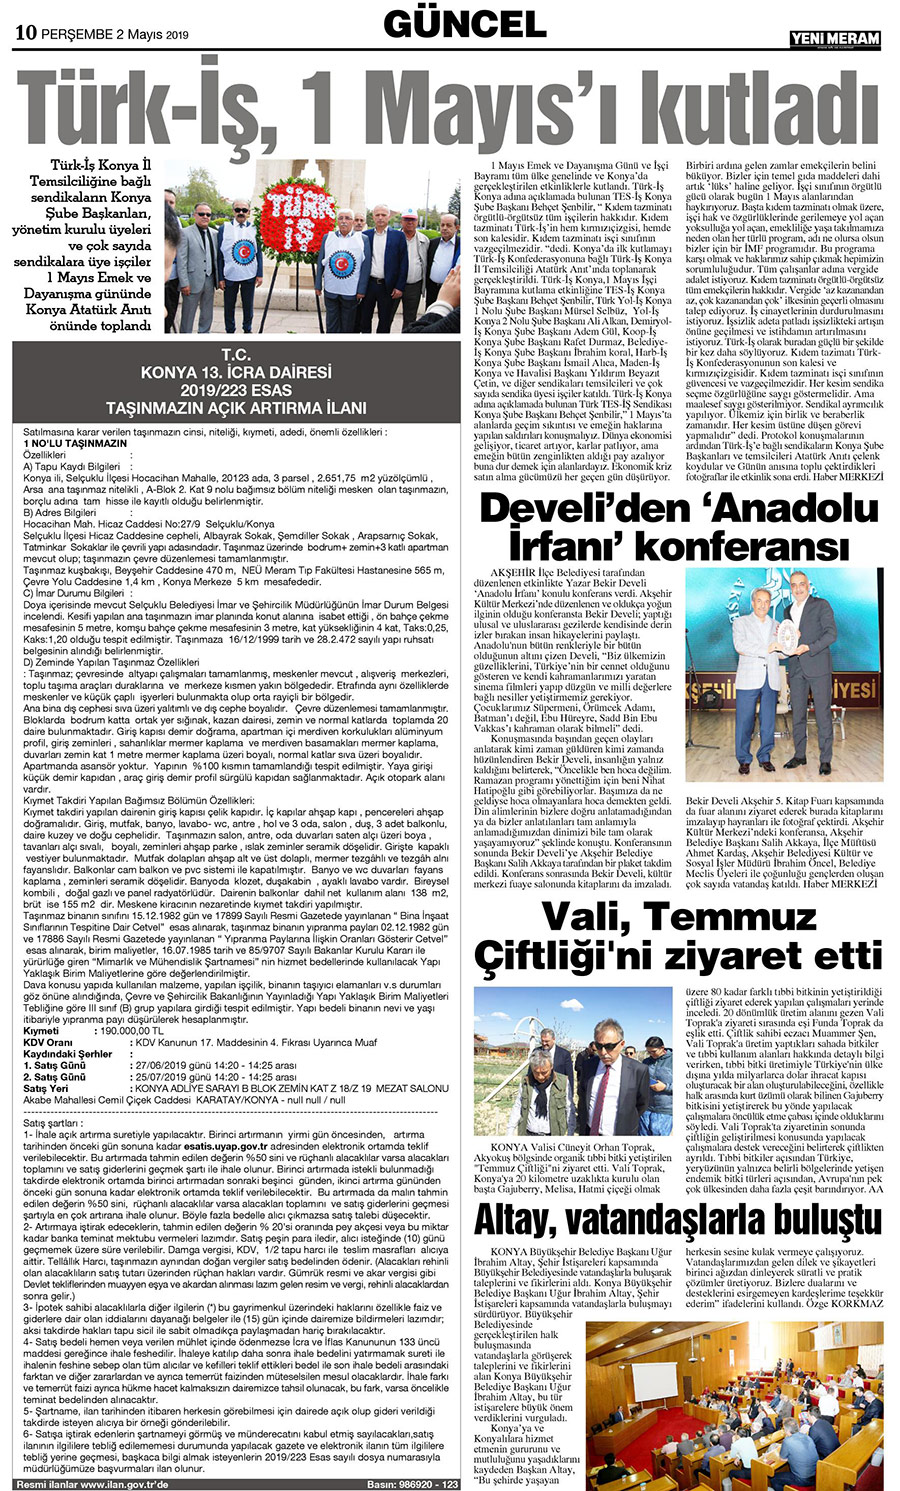 2 Mayıs 2019 Yeni Meram Gazetesi